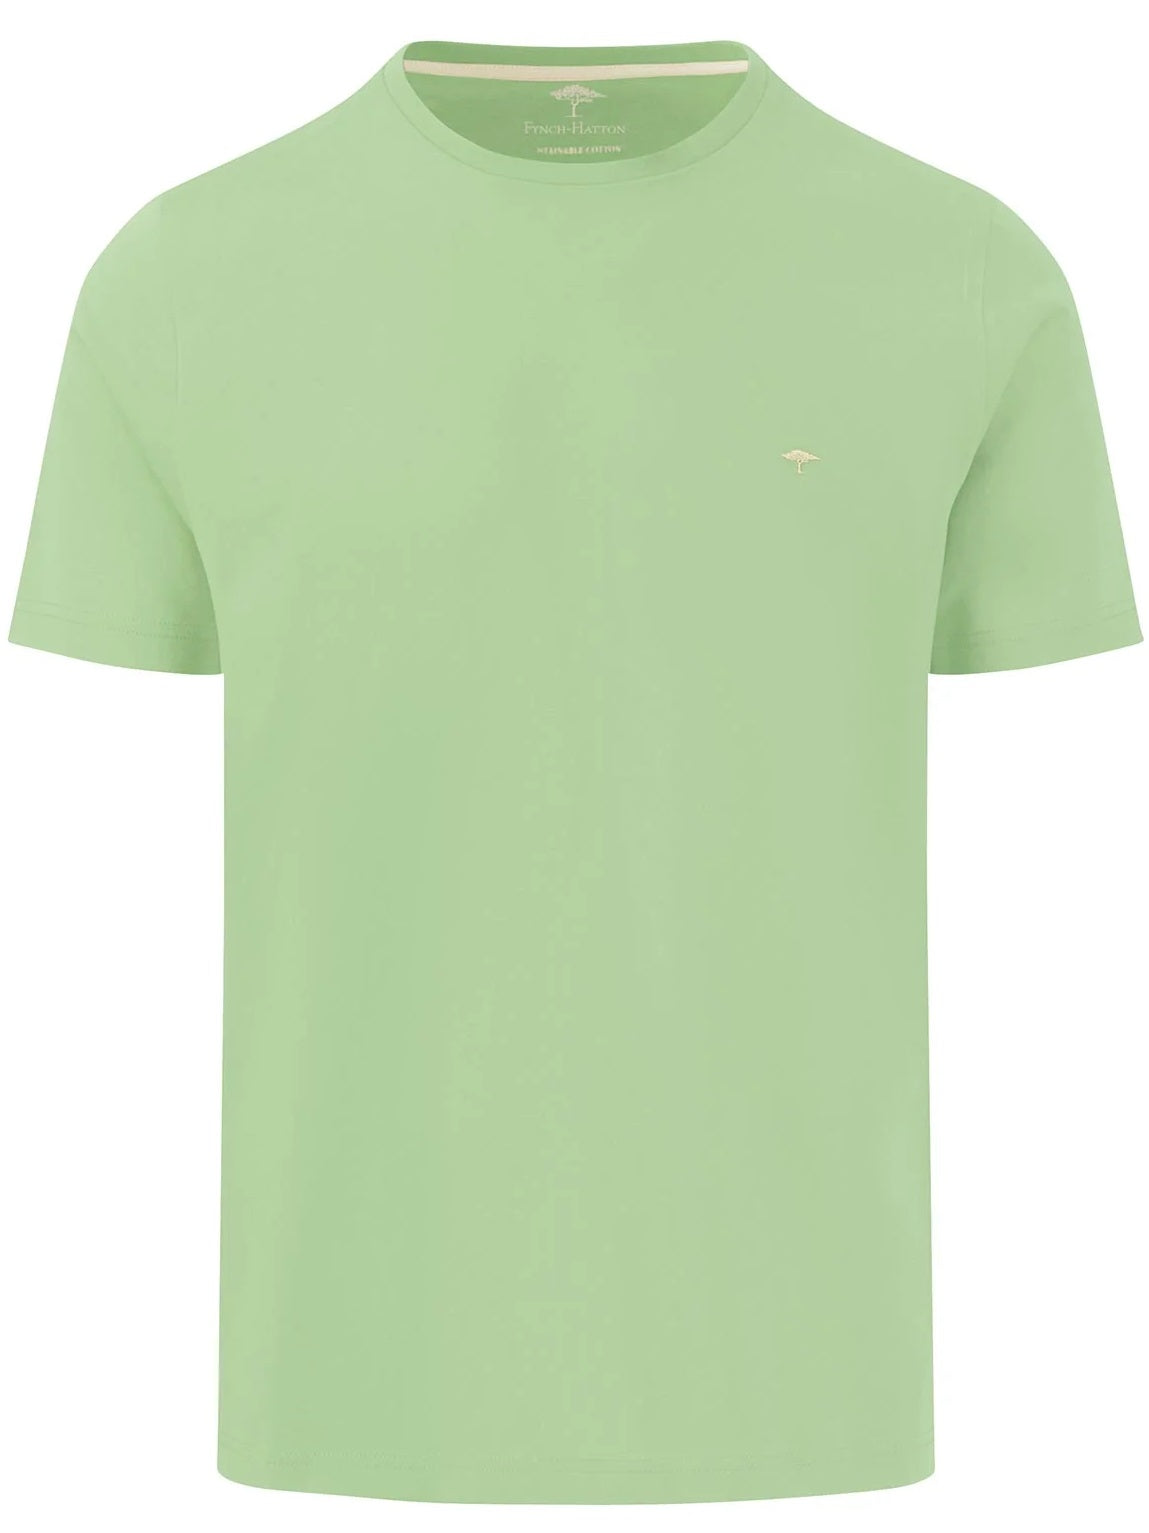 FYNCH HATTON T-Shirt - Men's Round Neck – Soft Green